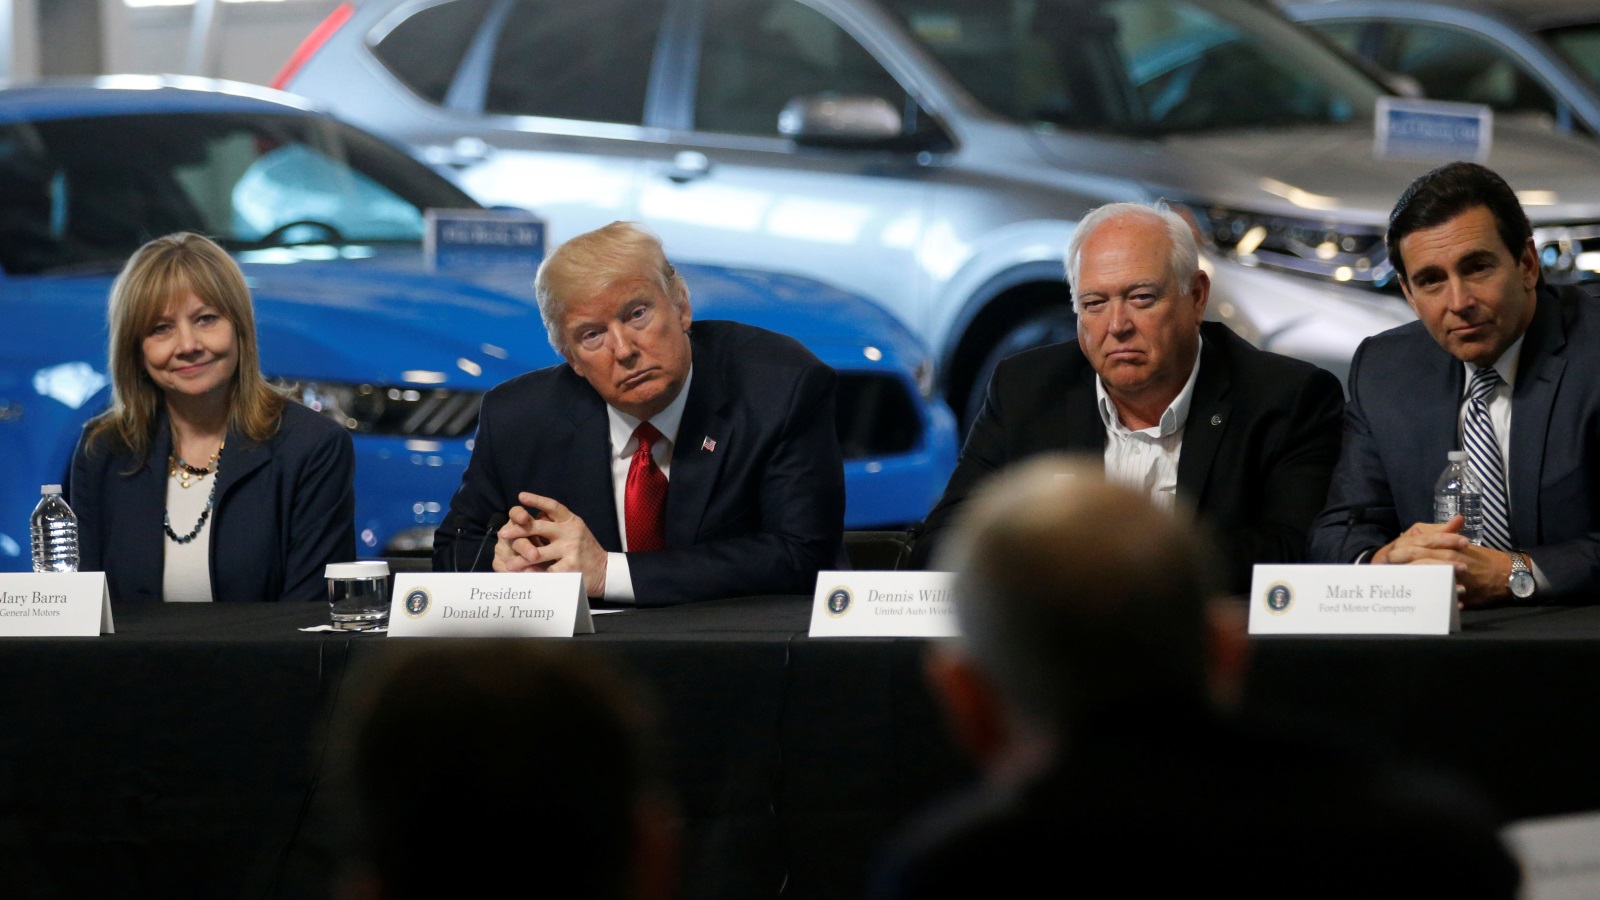 الرئيس الأمريكي دونالد ترمب، مع الرئيس التنفيذي لشركة جنرال موتورز ماري بارا، ورئيس عمال اتحاد السيارات (UAW)دينيس ويليامز، ومارك فيلدز الرئيس التنفيذي لشركة فورد